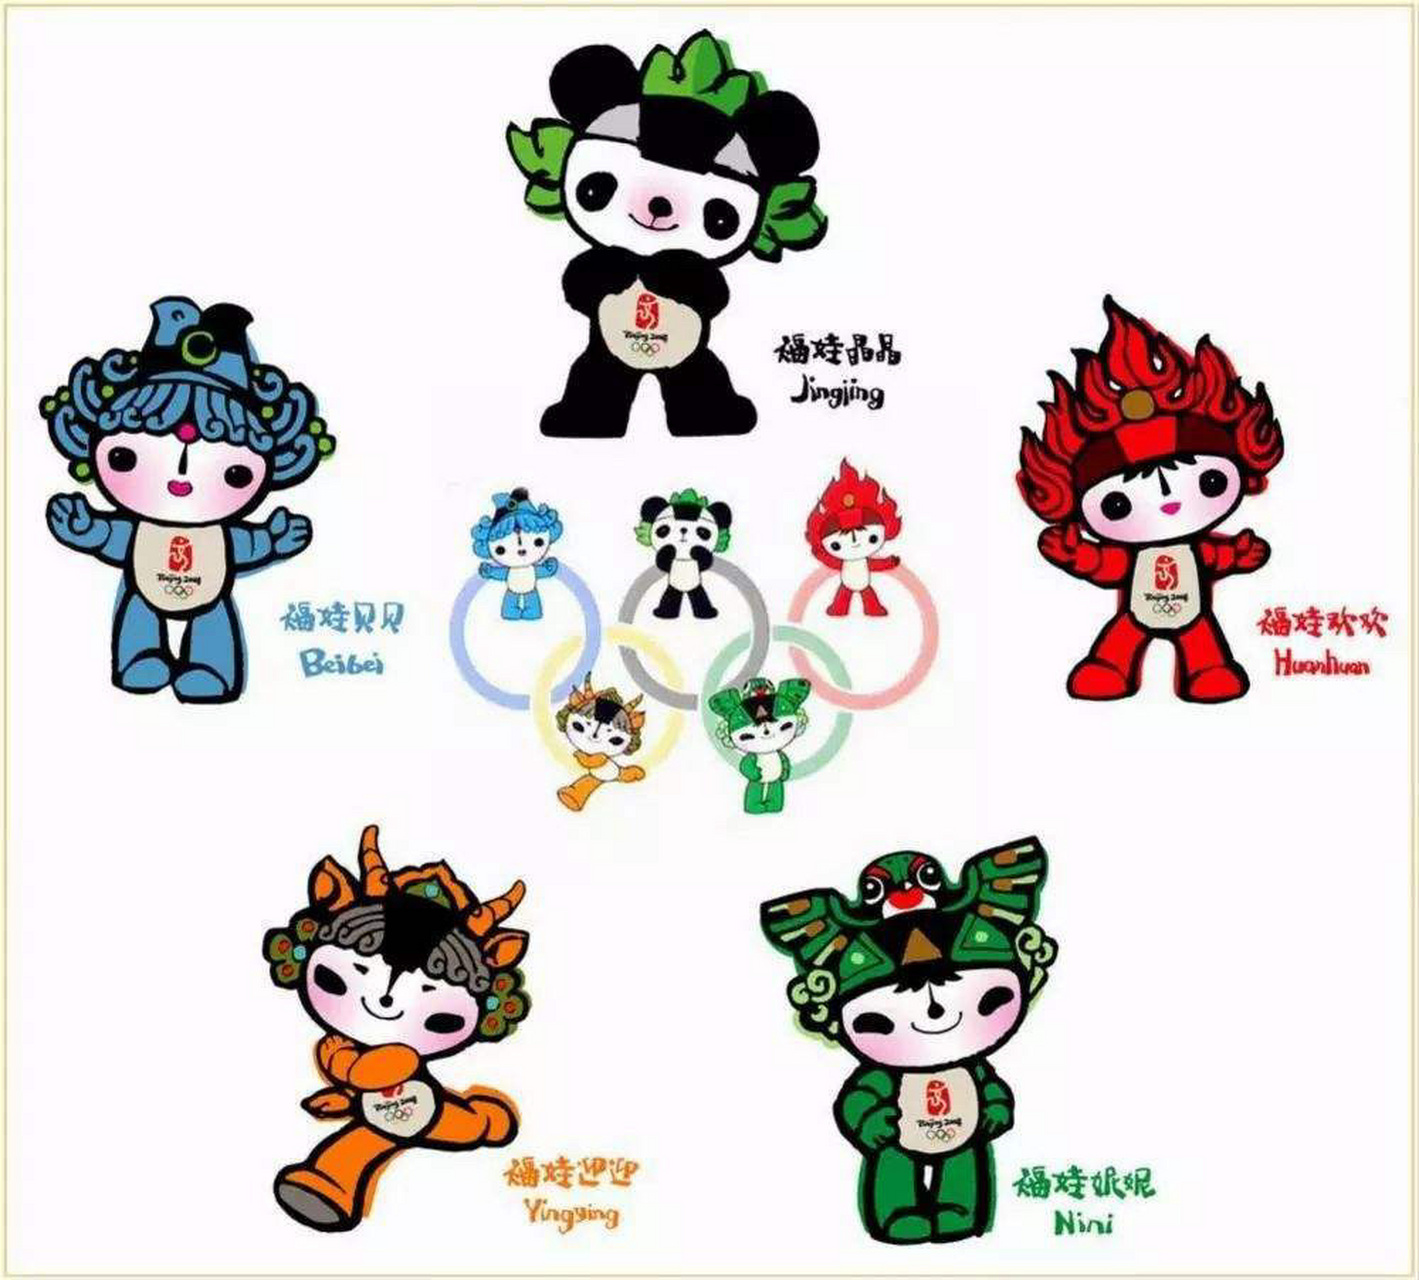 08年北京奥运会吉祥物图片